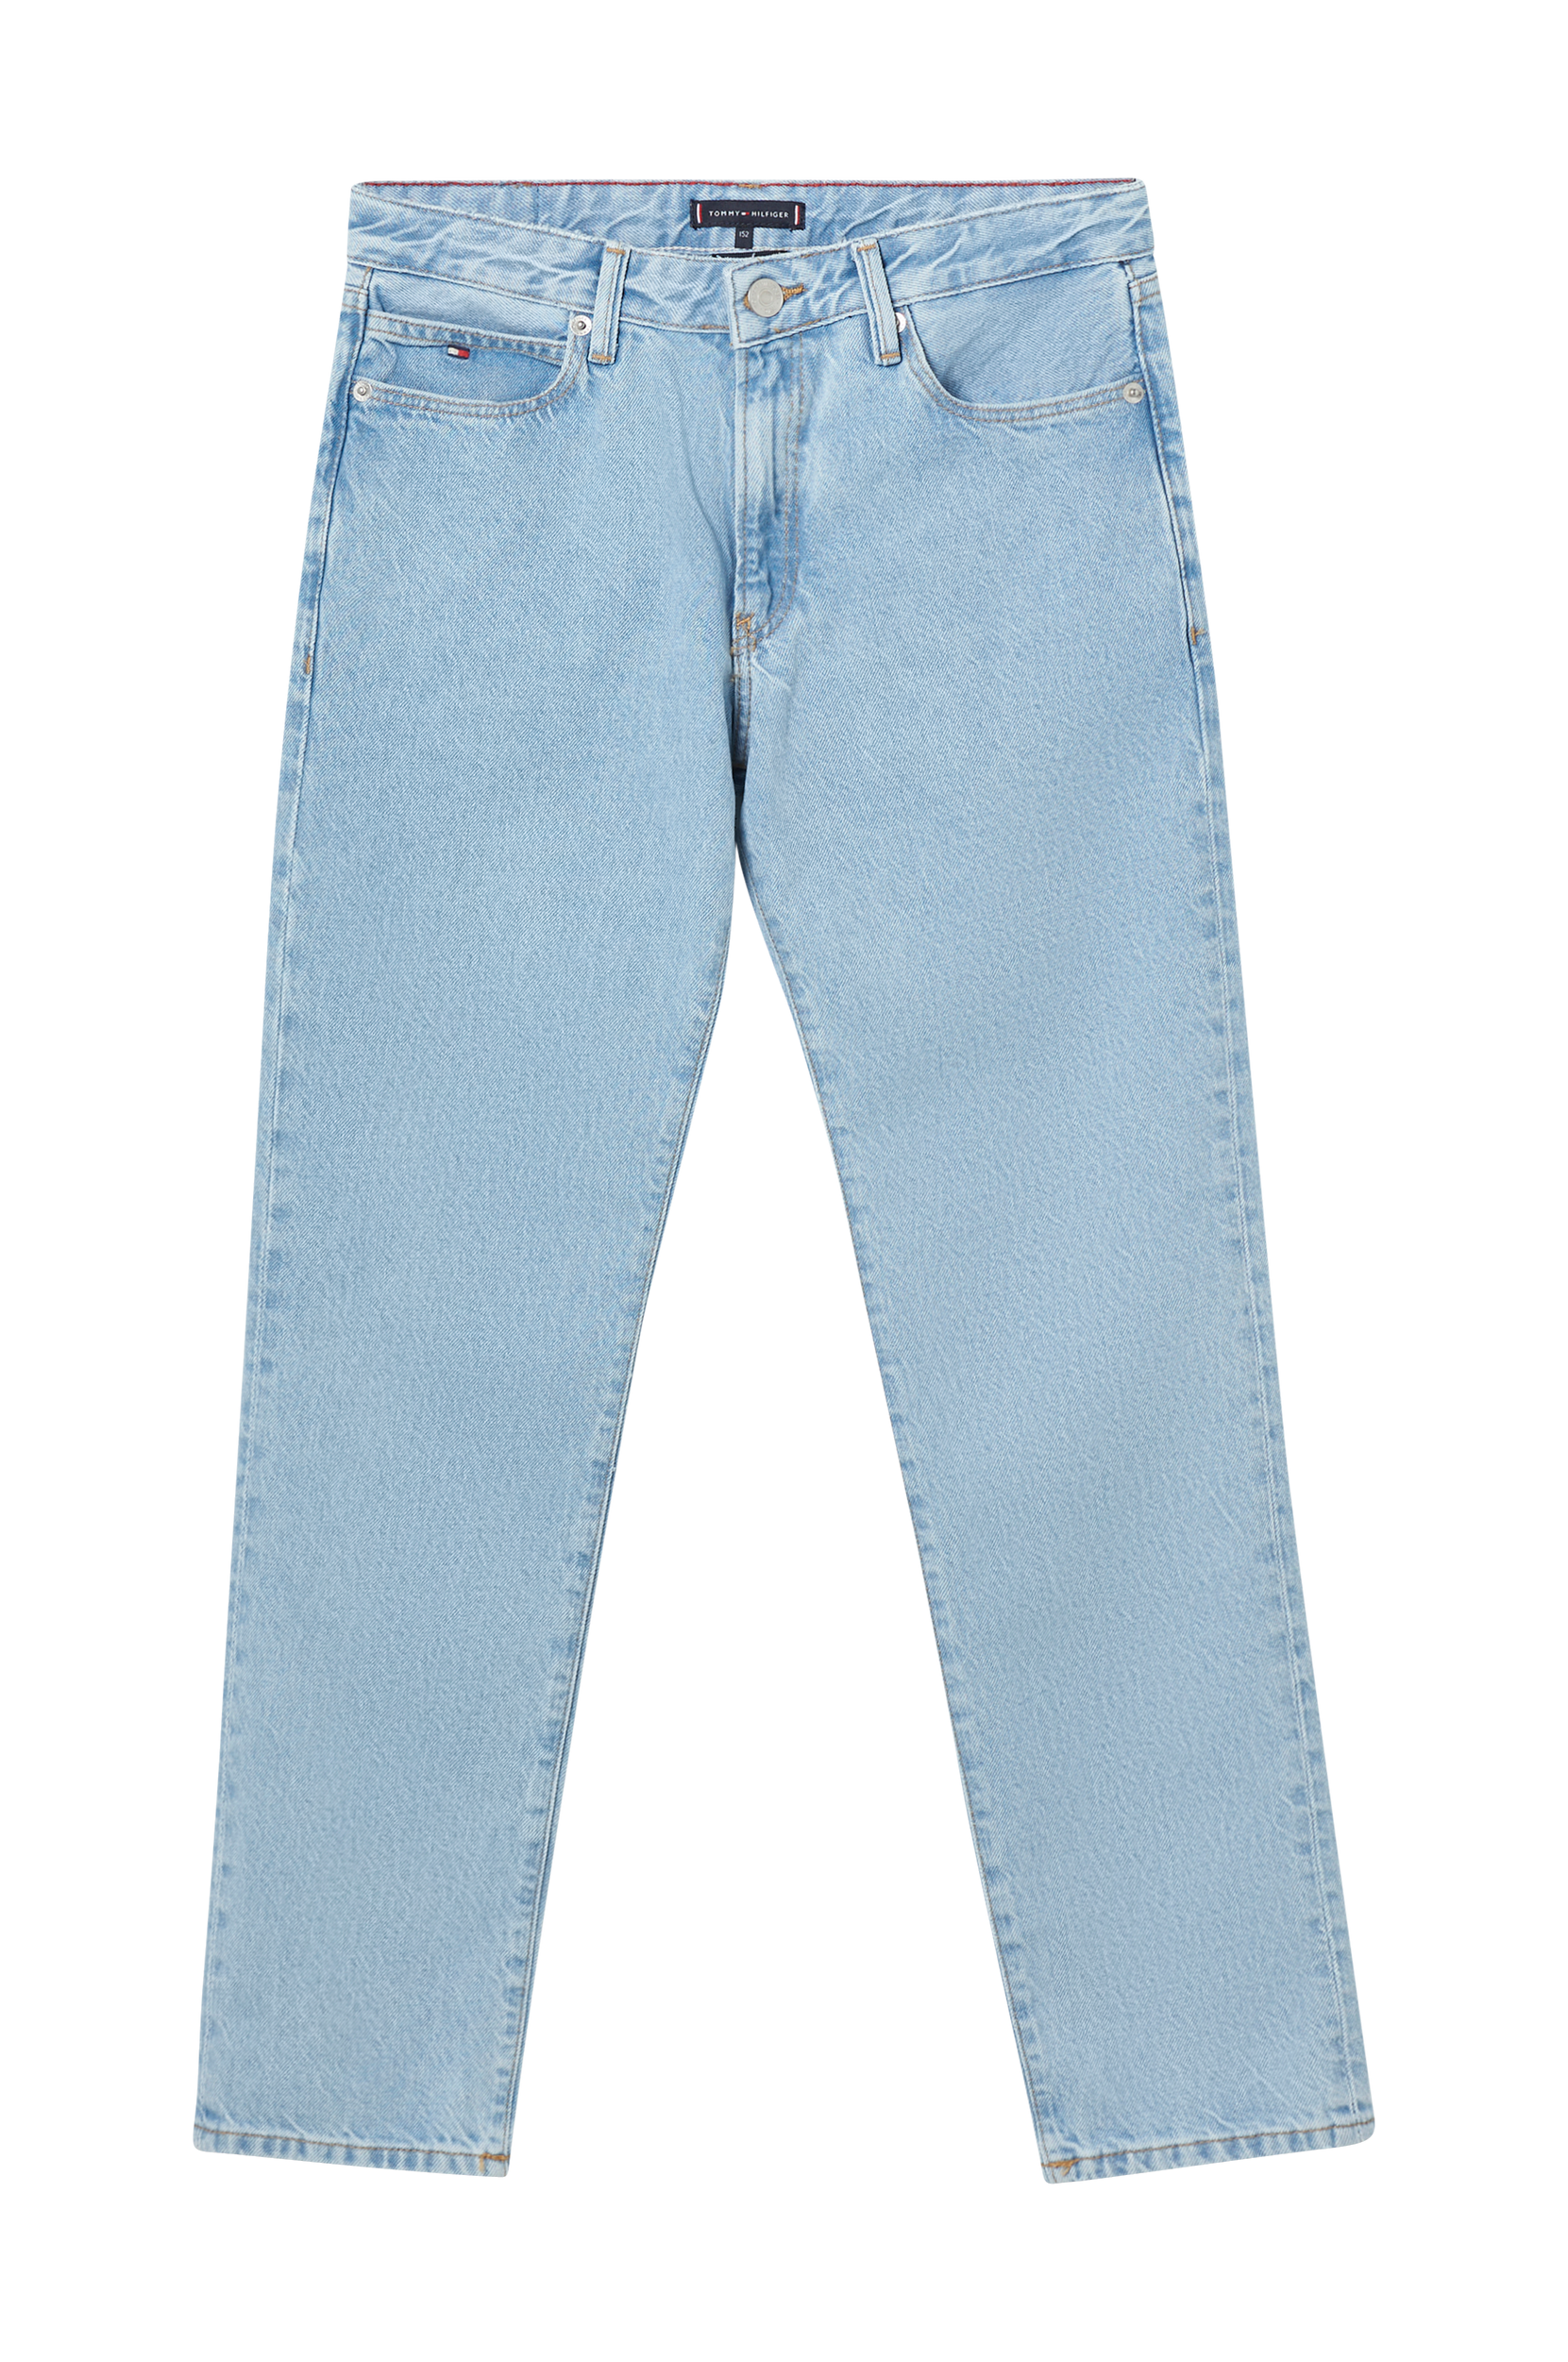 Tommy Hilfiger - Skater Jean - Blå - 170 - Jeans - Tøj til børn (29591336)